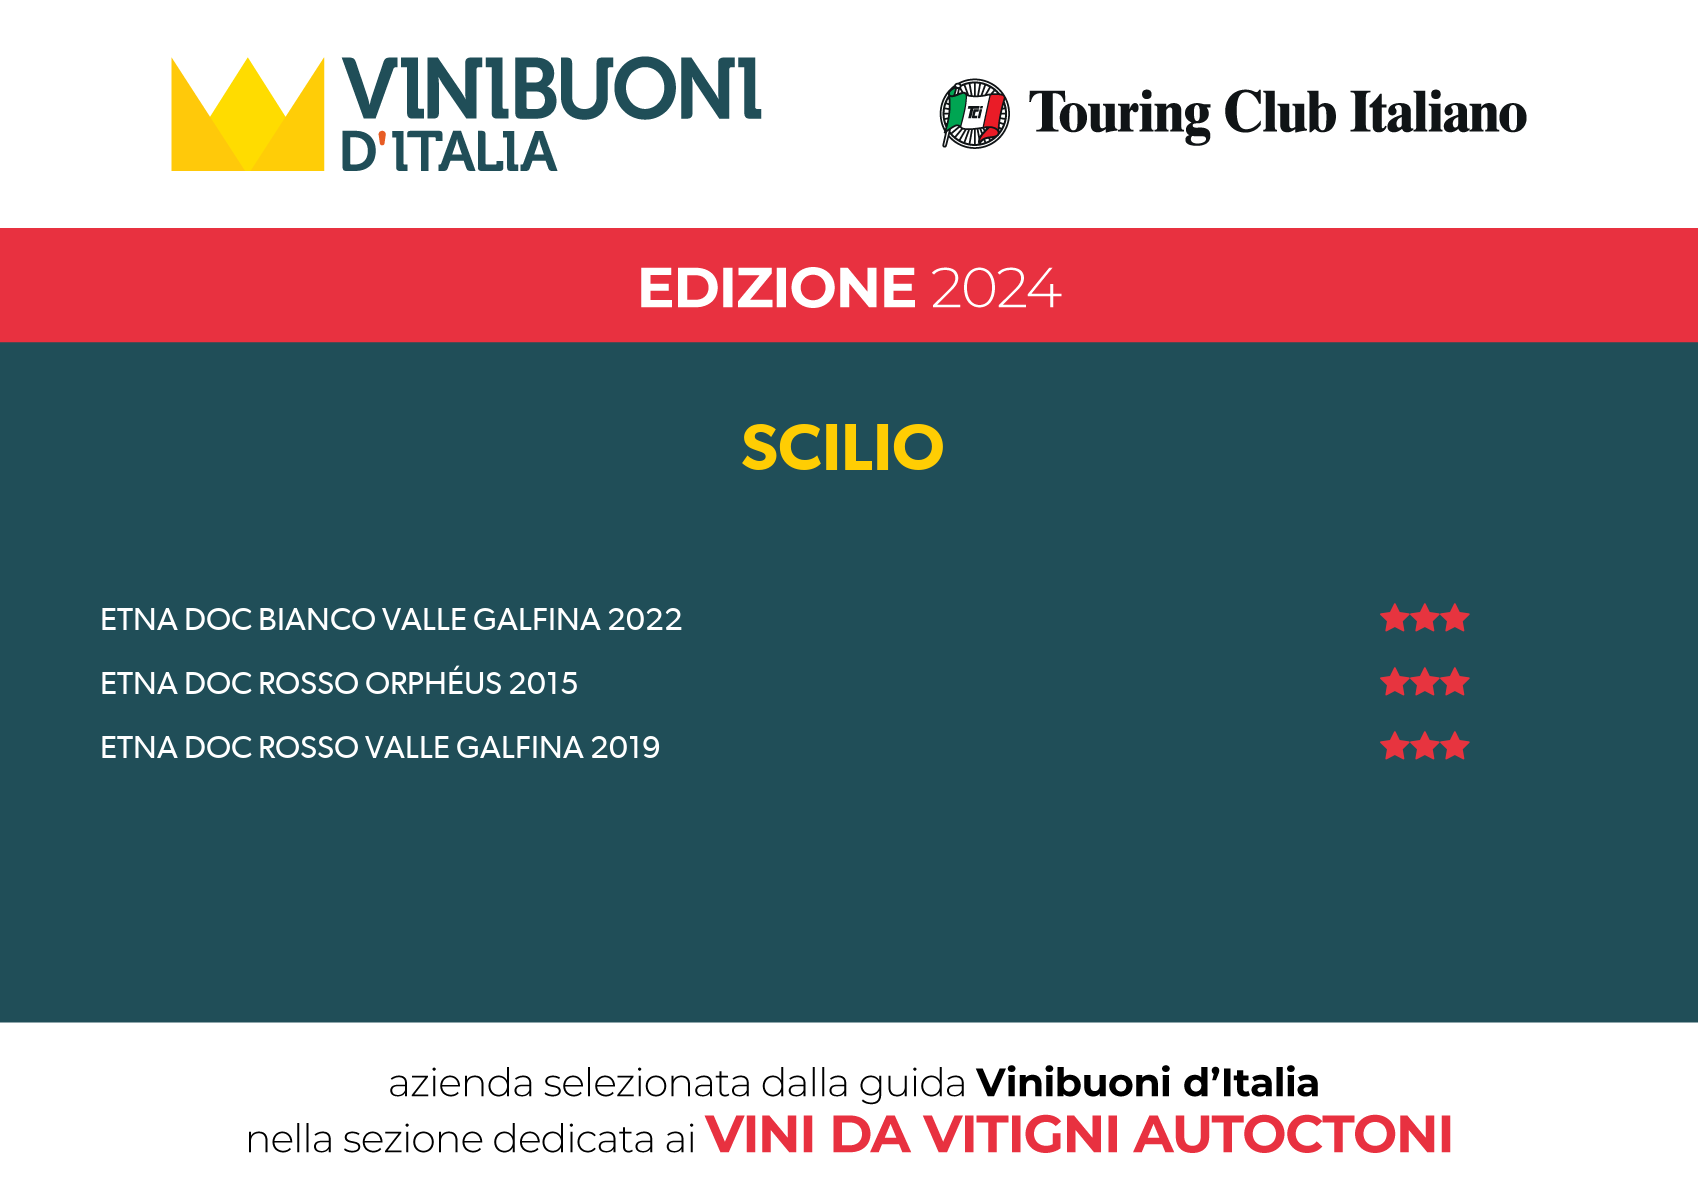 VINIBUONI D'ITALIA - EDIZIONE 2024